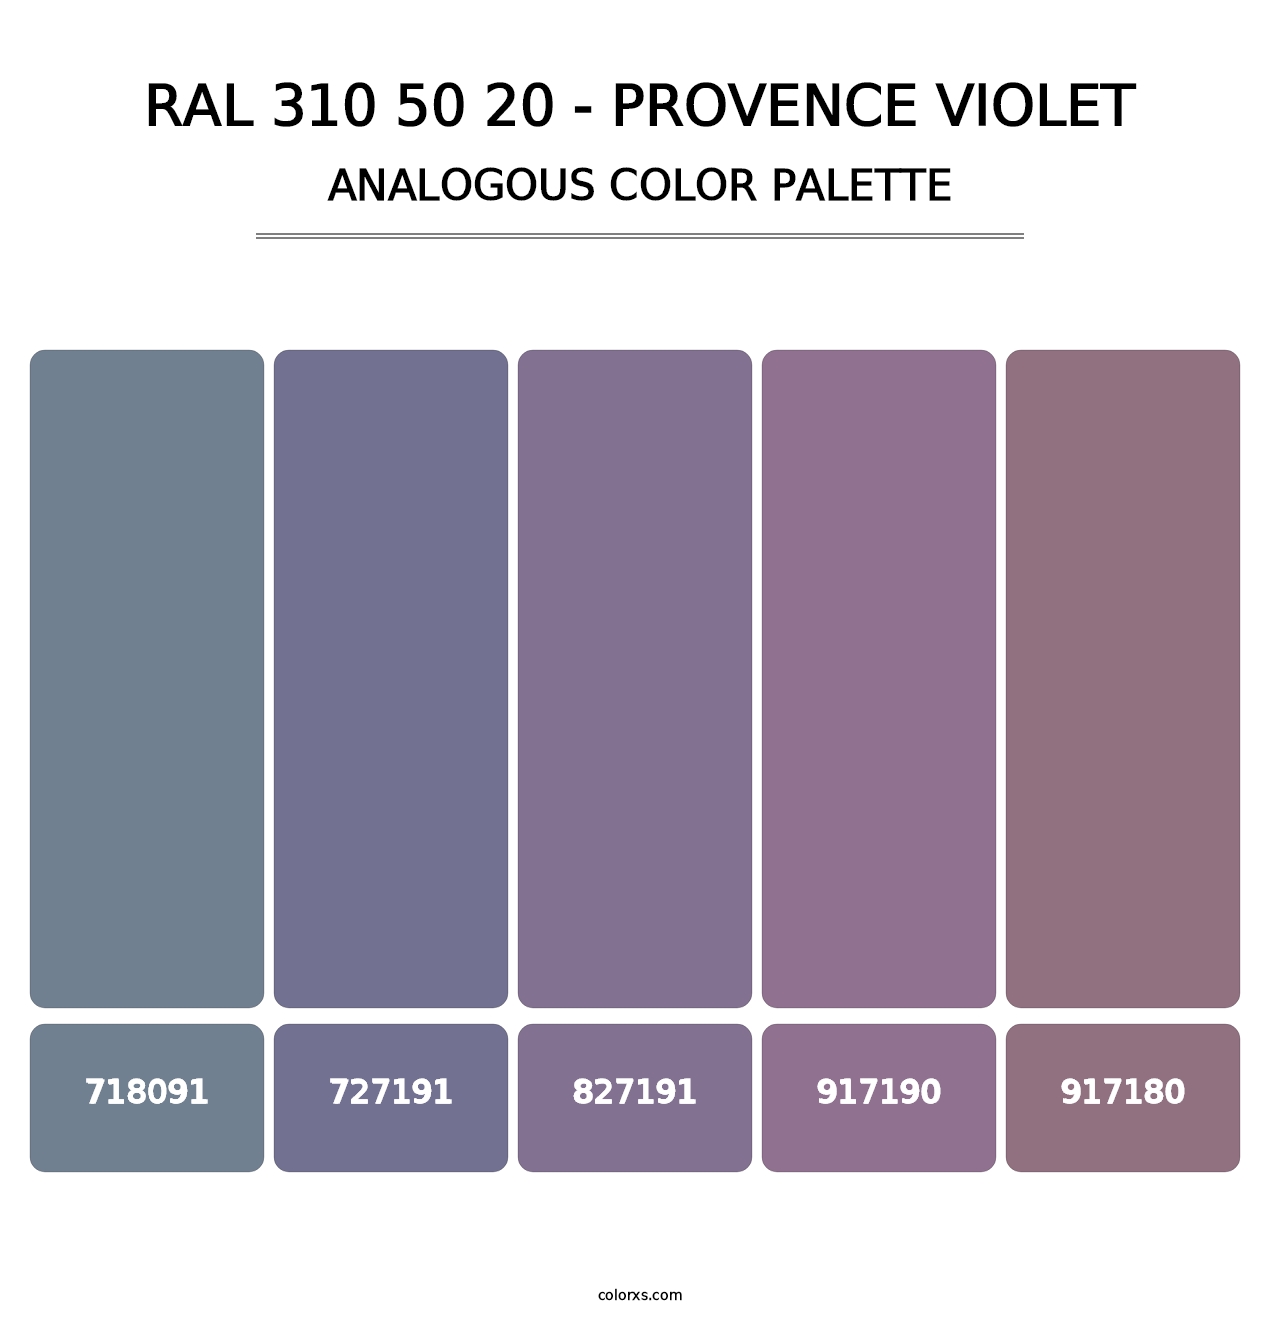 RAL 310 50 20 - Provence Violet - Analogous Color Palette